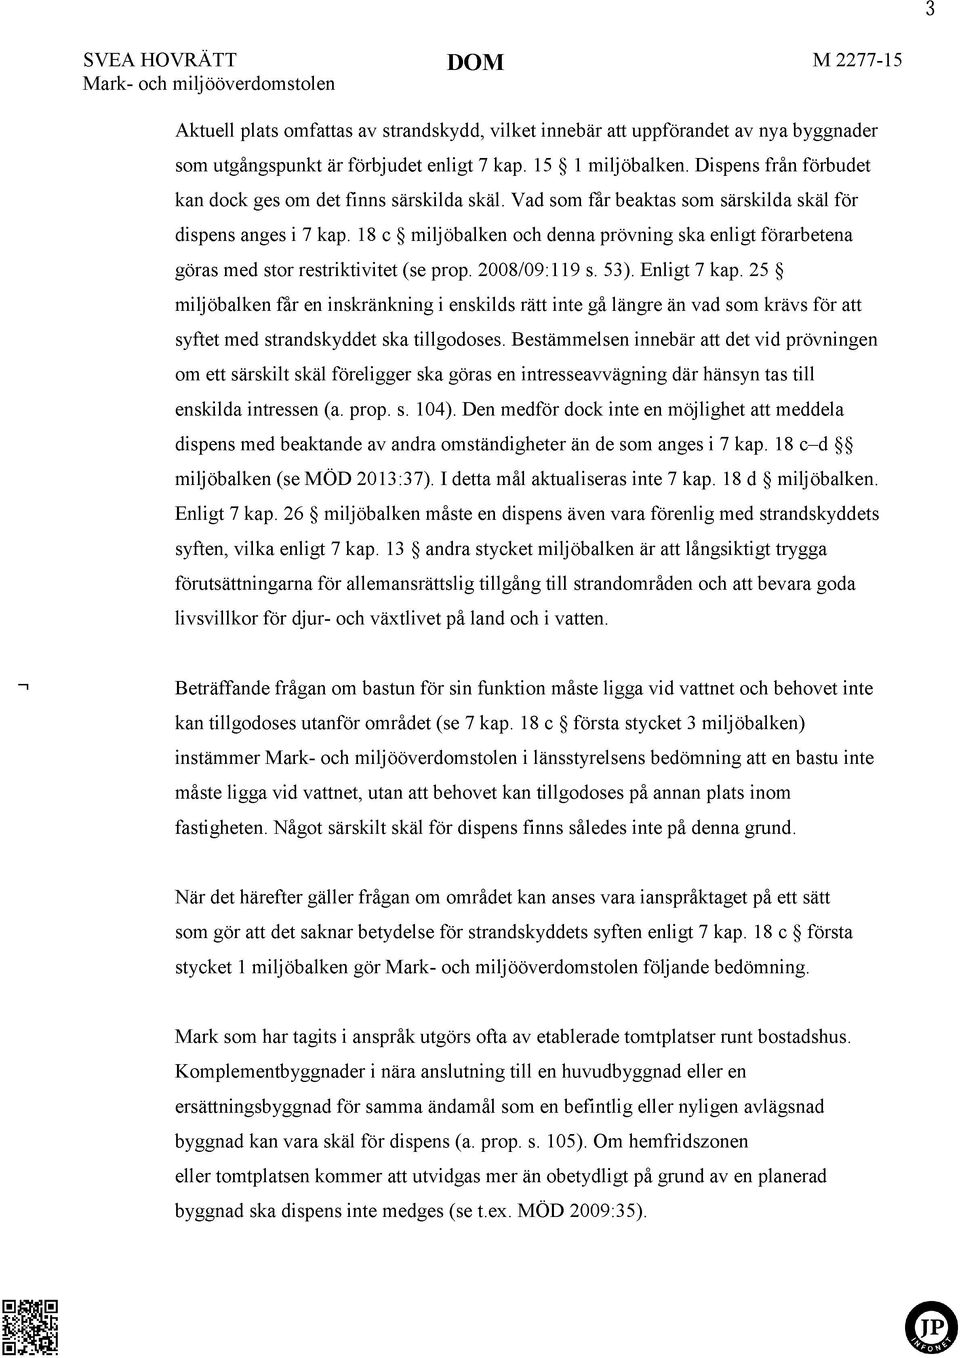 SVEA HOVRÄTT DOM Mål nr Mark- och miljööverdom stol en M - PDF Free Download